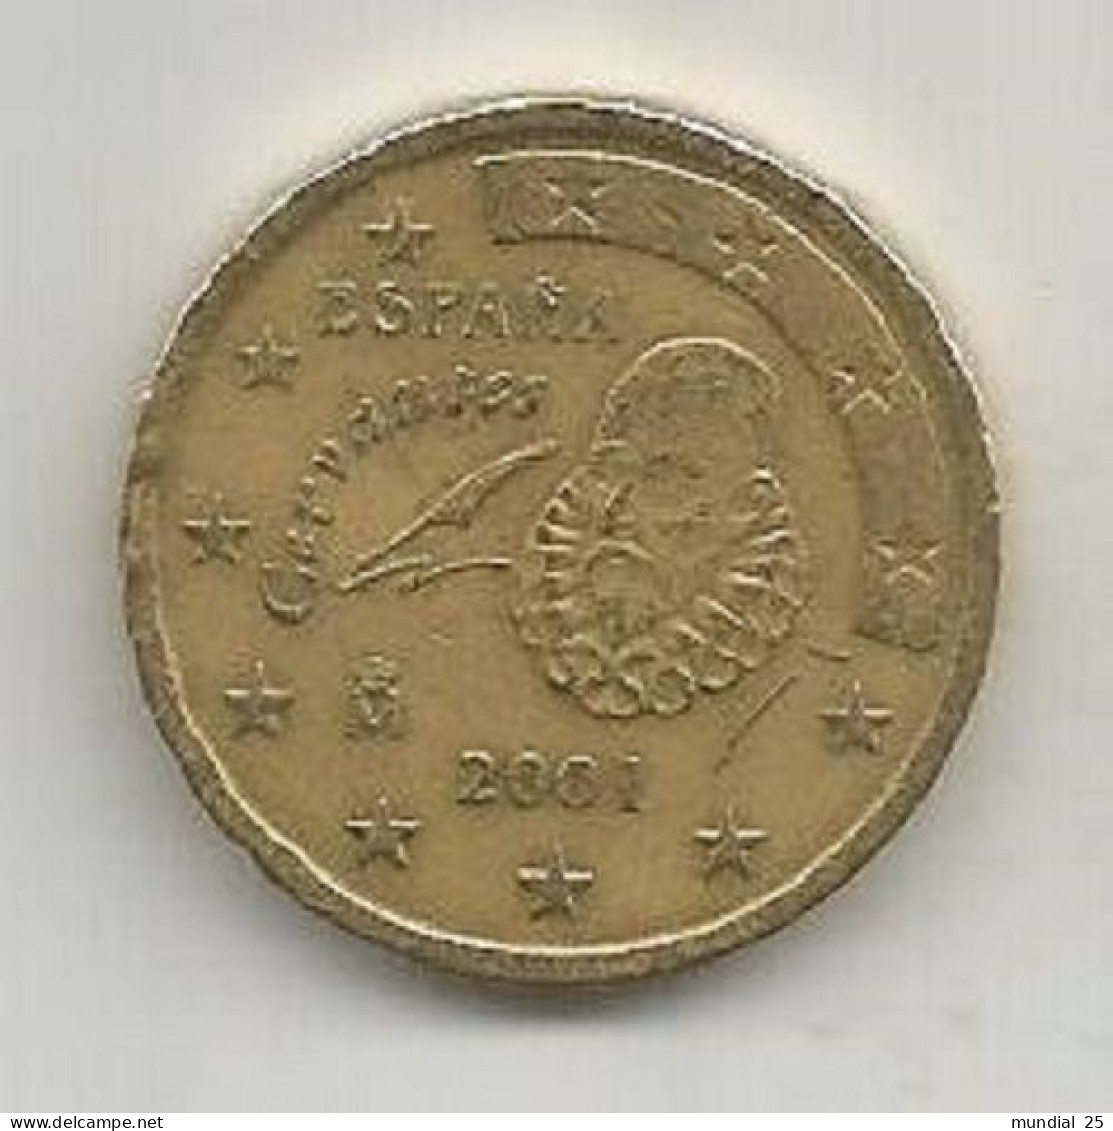 SPAIN 50 EURO CENT 2001 M - Spanien